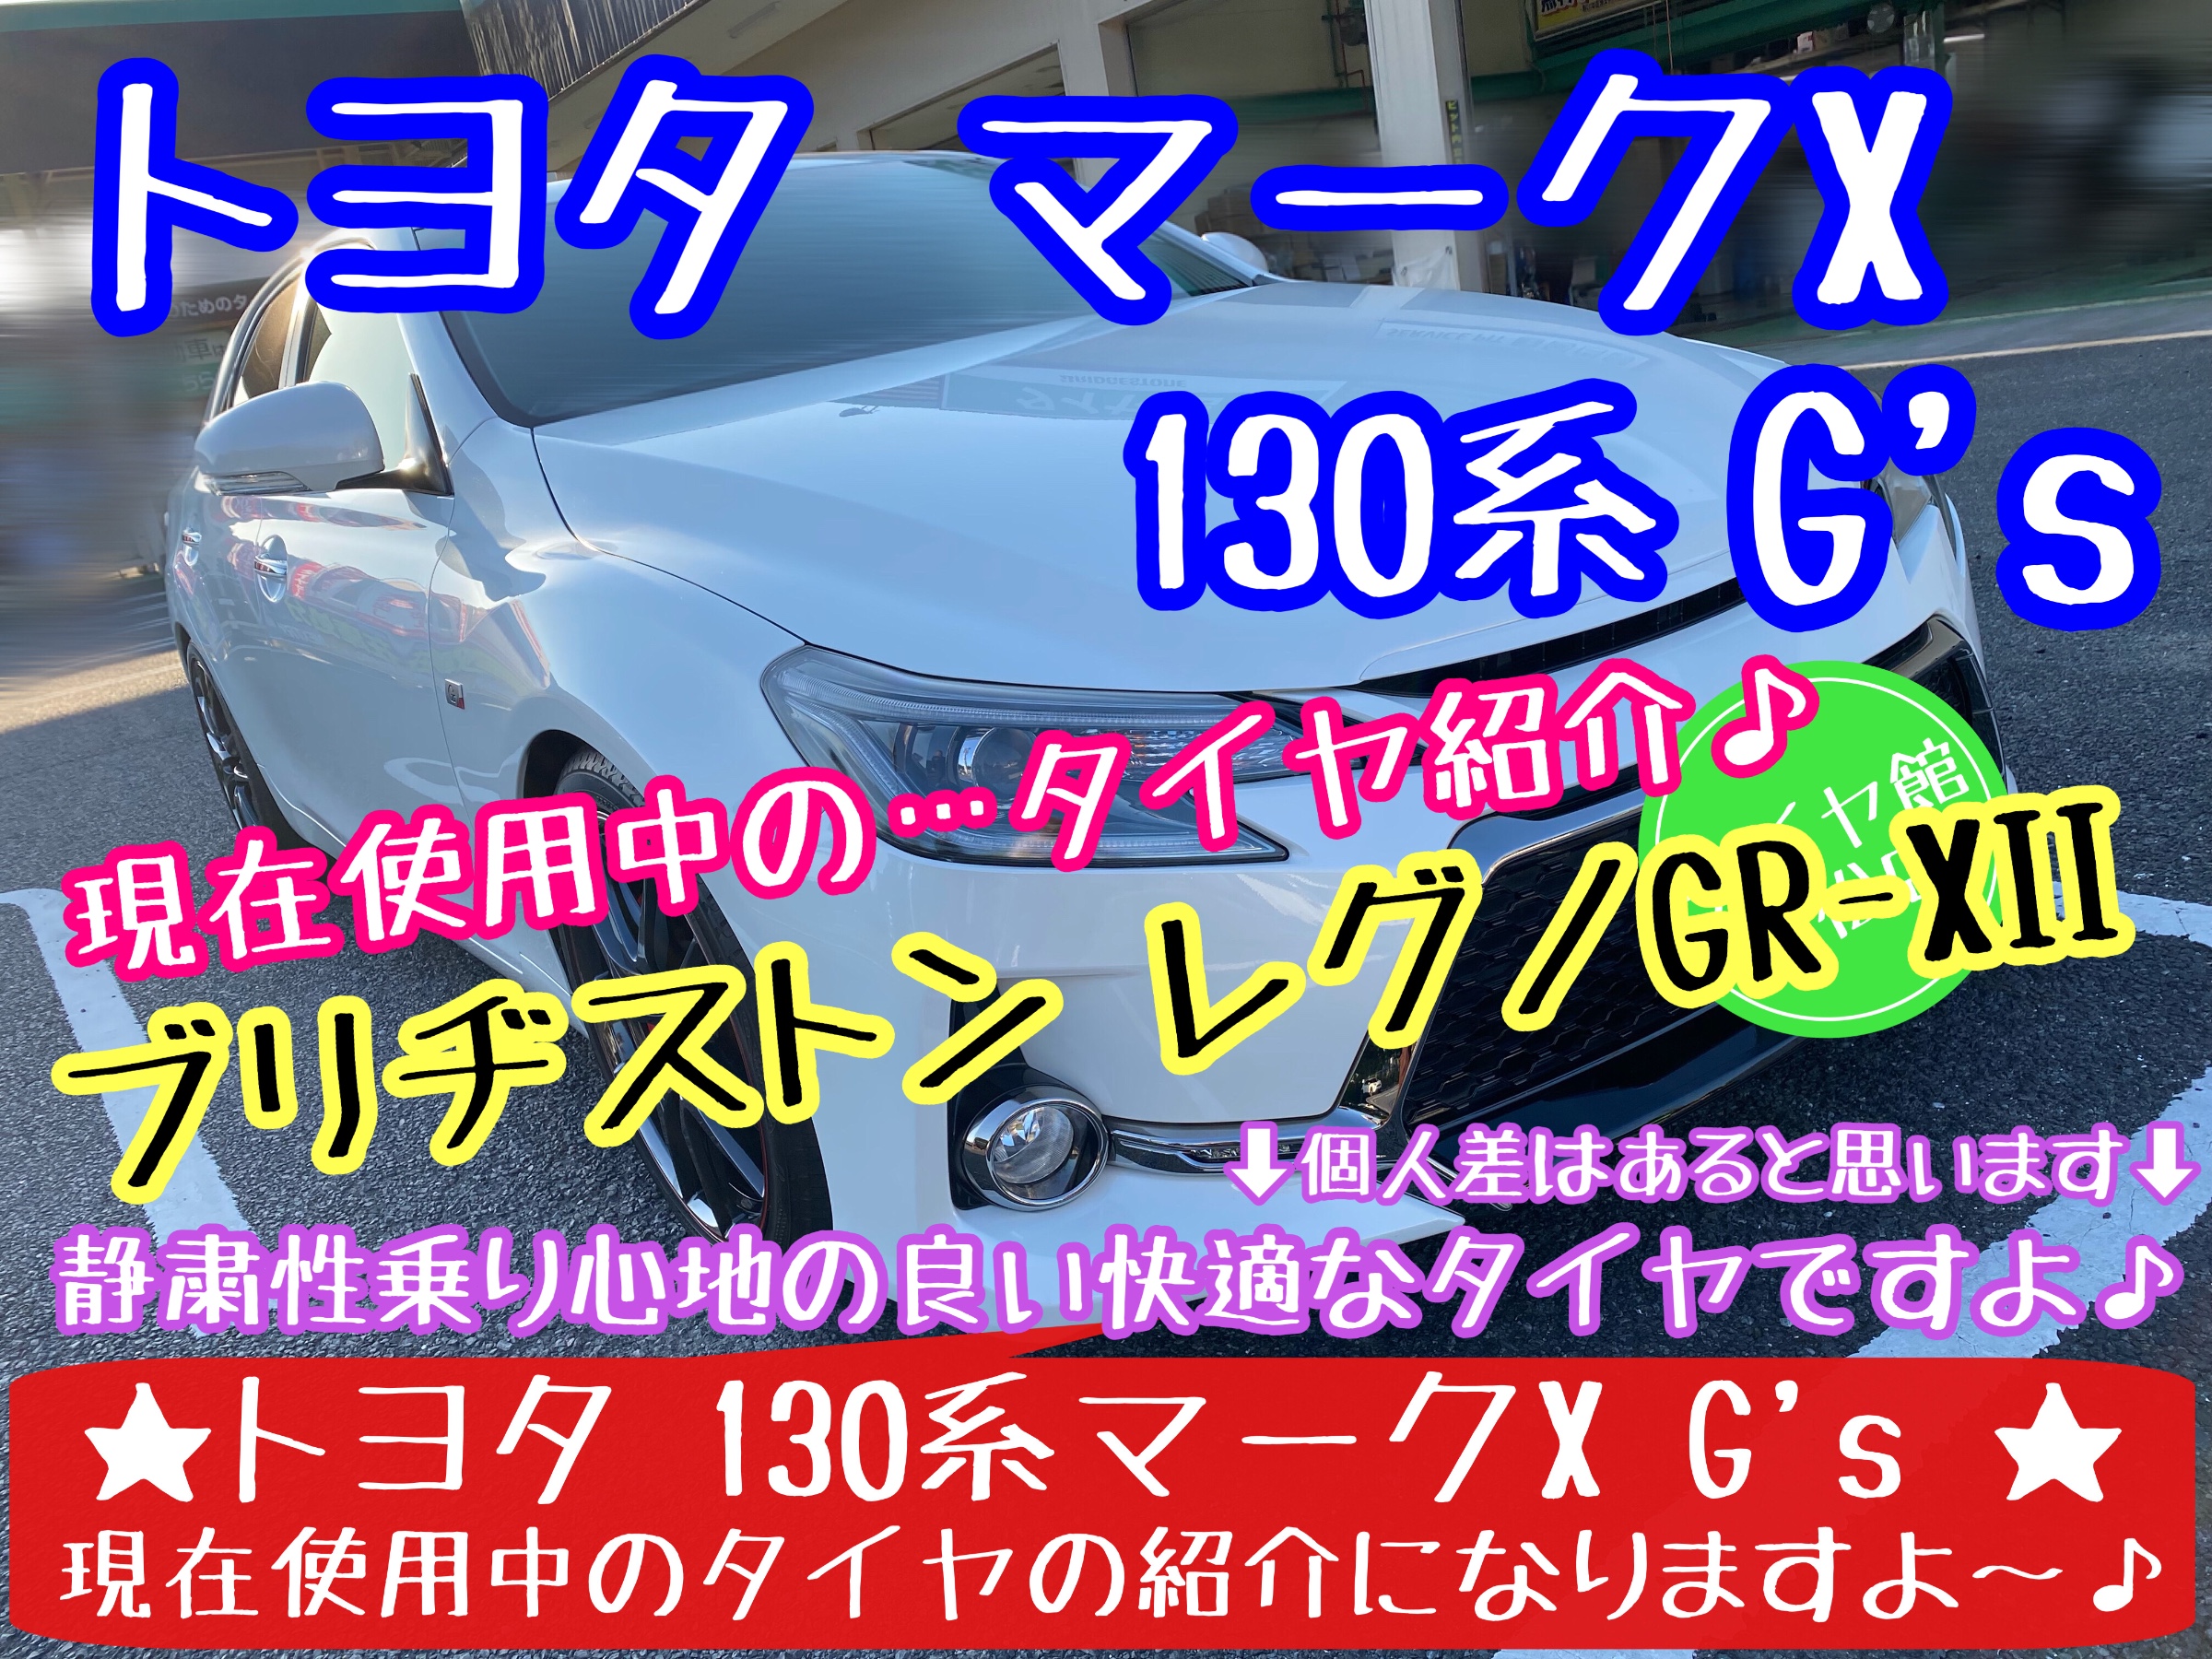 トヨタ マークX G's ブリヂストン レグノGR-XII使用中♪ | トヨタ